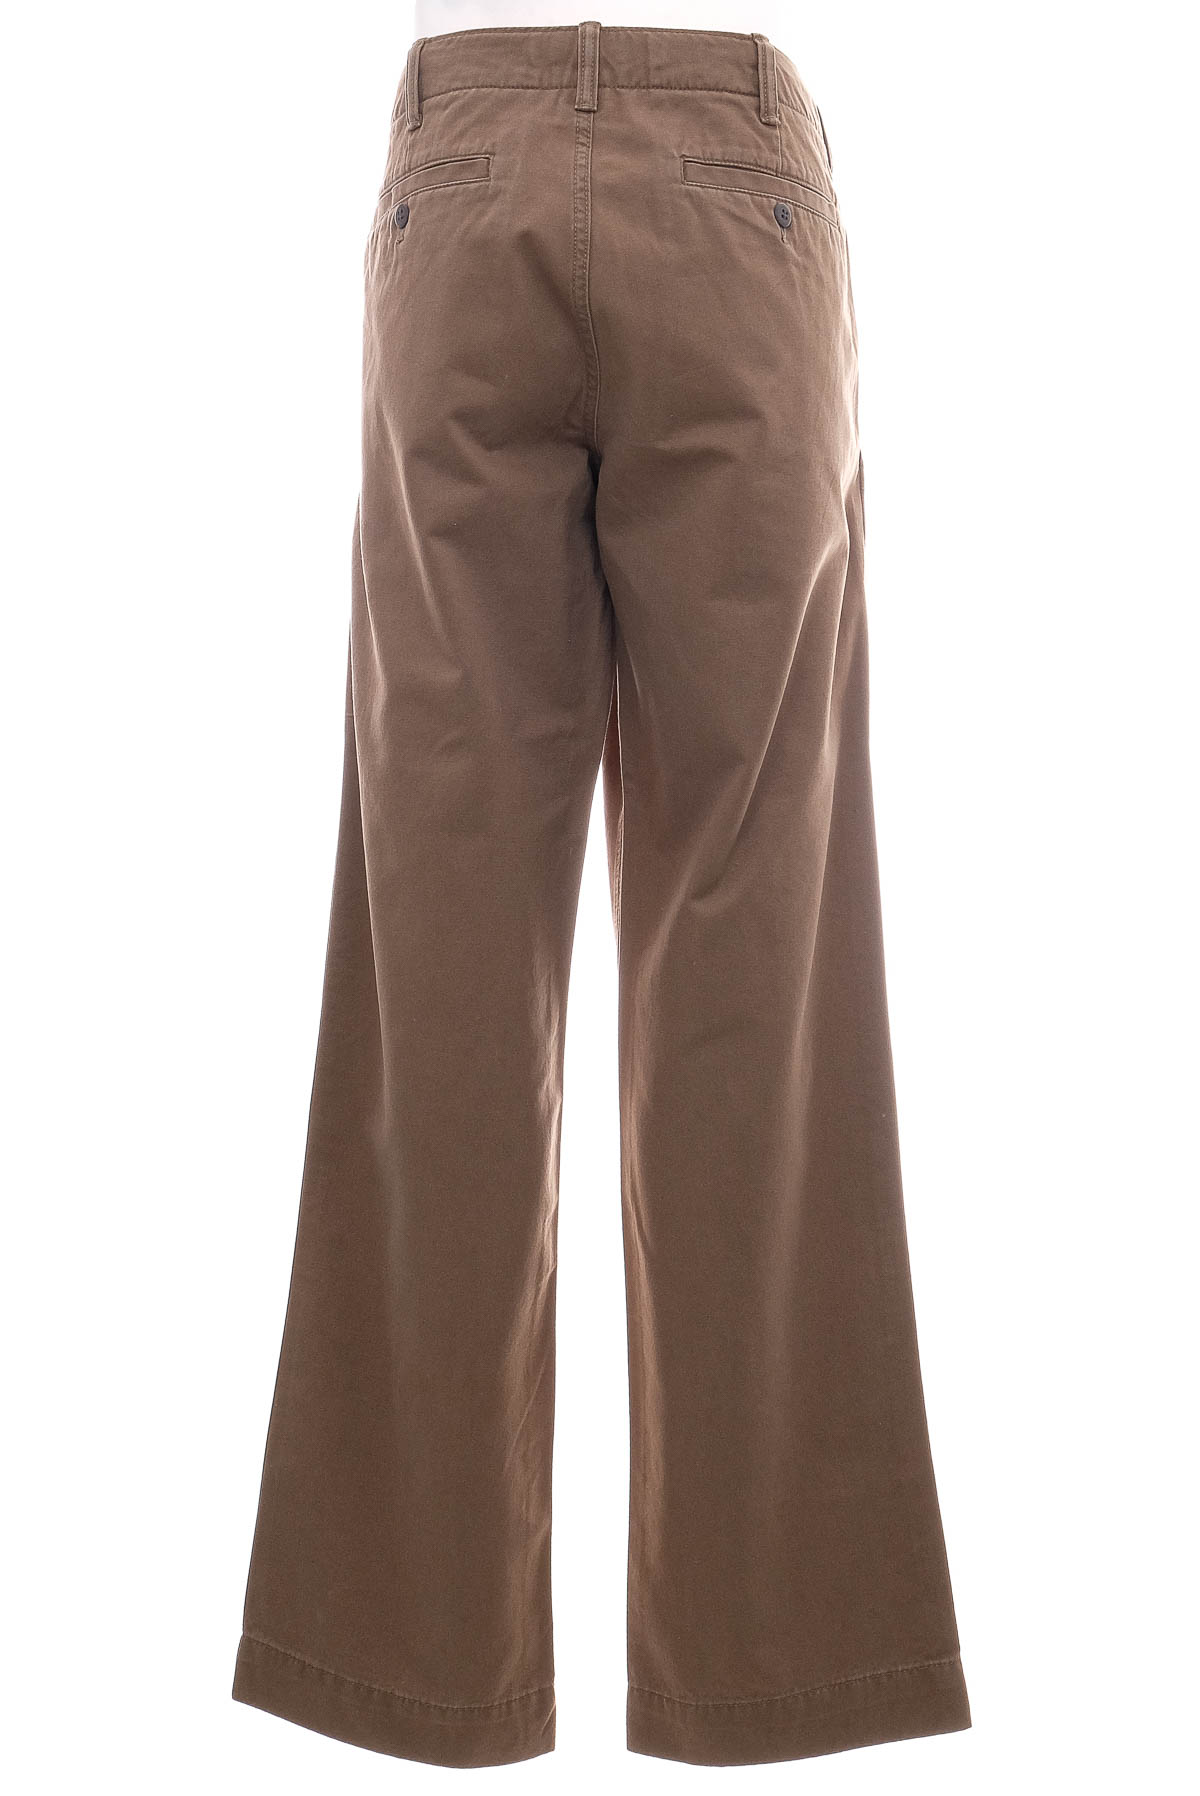 Pantalon pentru bărbați - GAP - 1